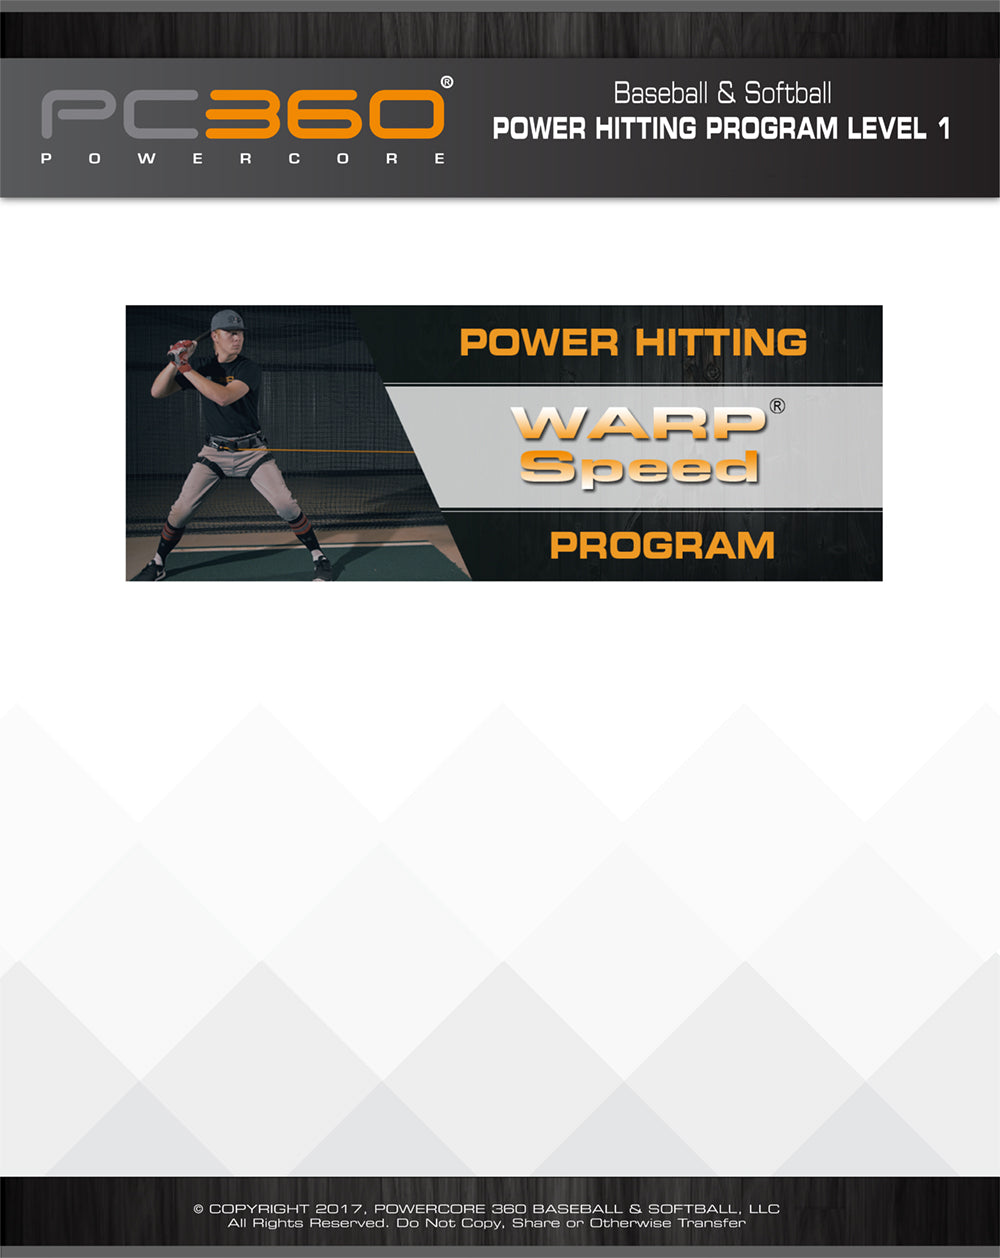 Baseball & Softball Power Hitting Programs